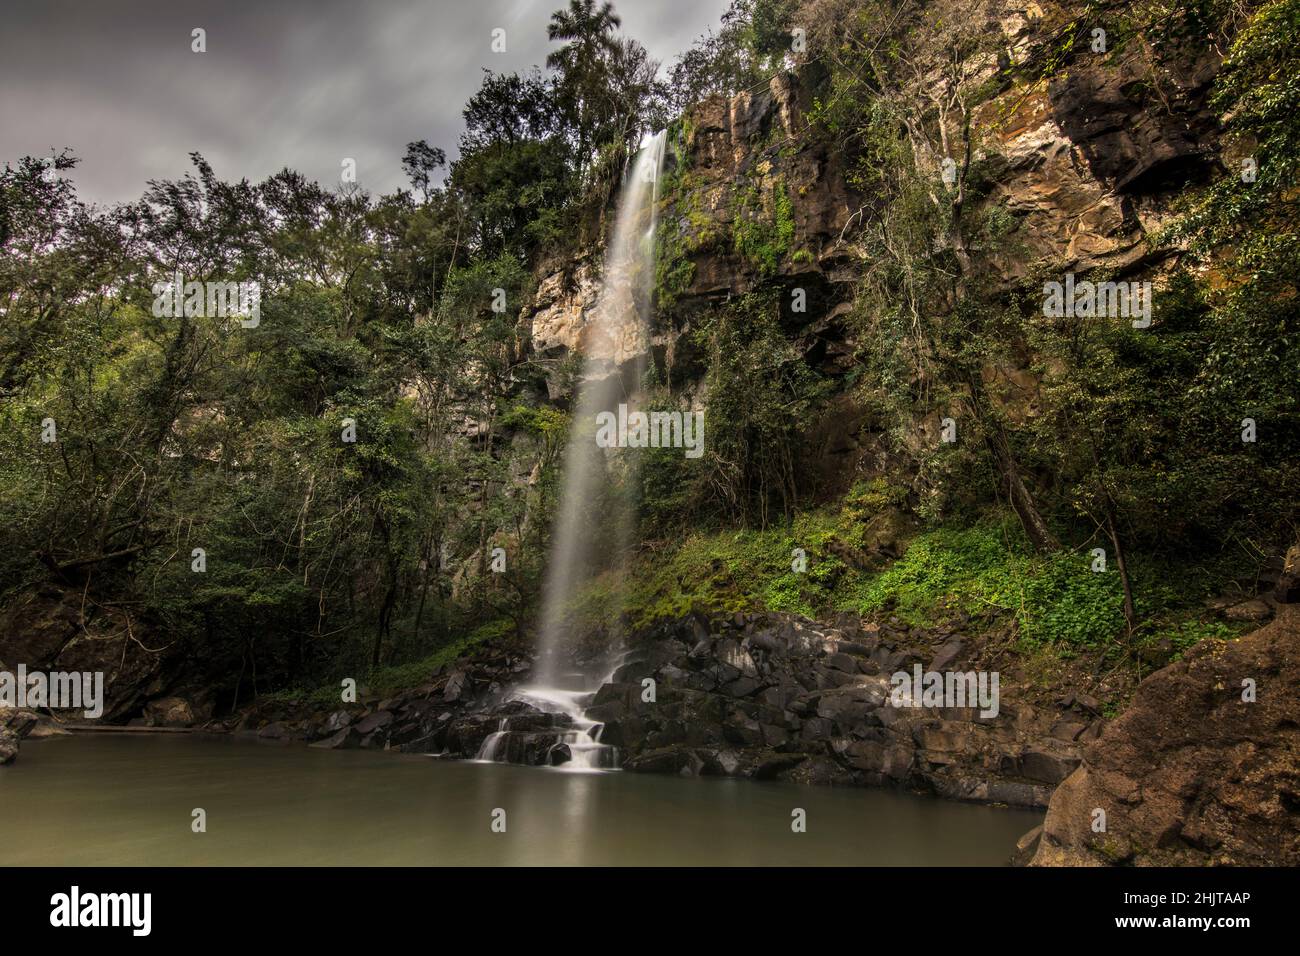 Sutilo acqua goccia nel Parco Nazionale Cataratas del Iguazú, chiamato Salto Escondido (salto nascosto) tra la foresta giungla a Misiones, Argentina Foto Stock